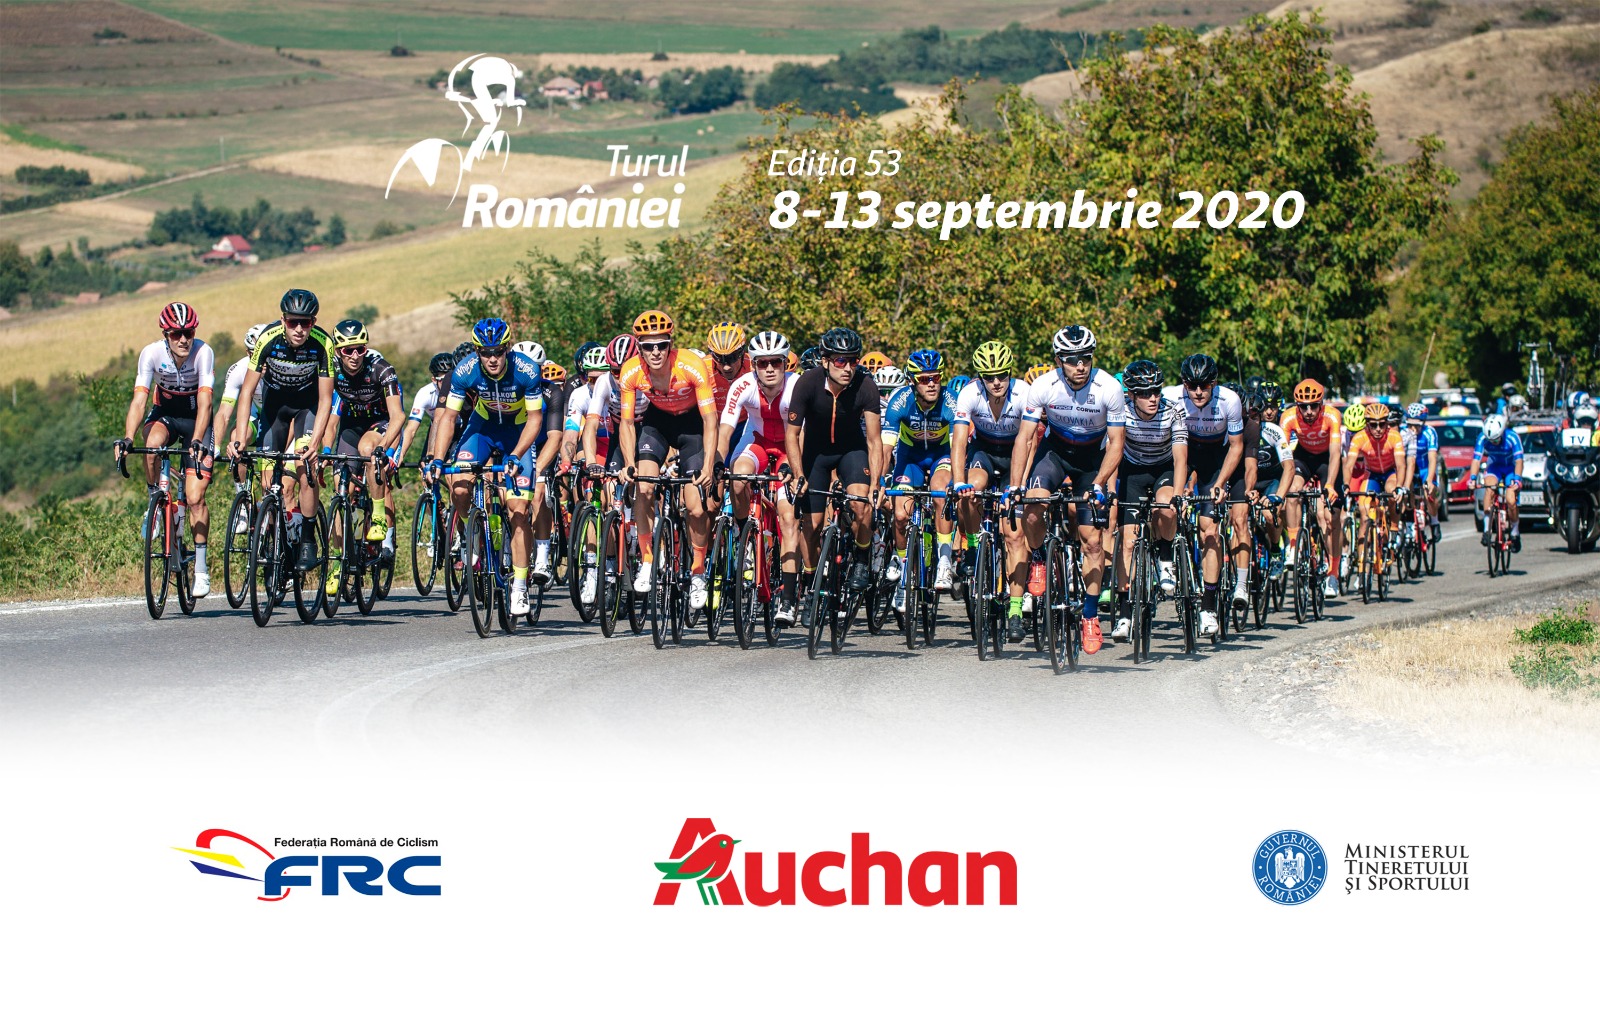 Turul României 2020, cel mai important eveniment sportiv internațional al anului în România, va avea loc în perioada 8-13 septembrie